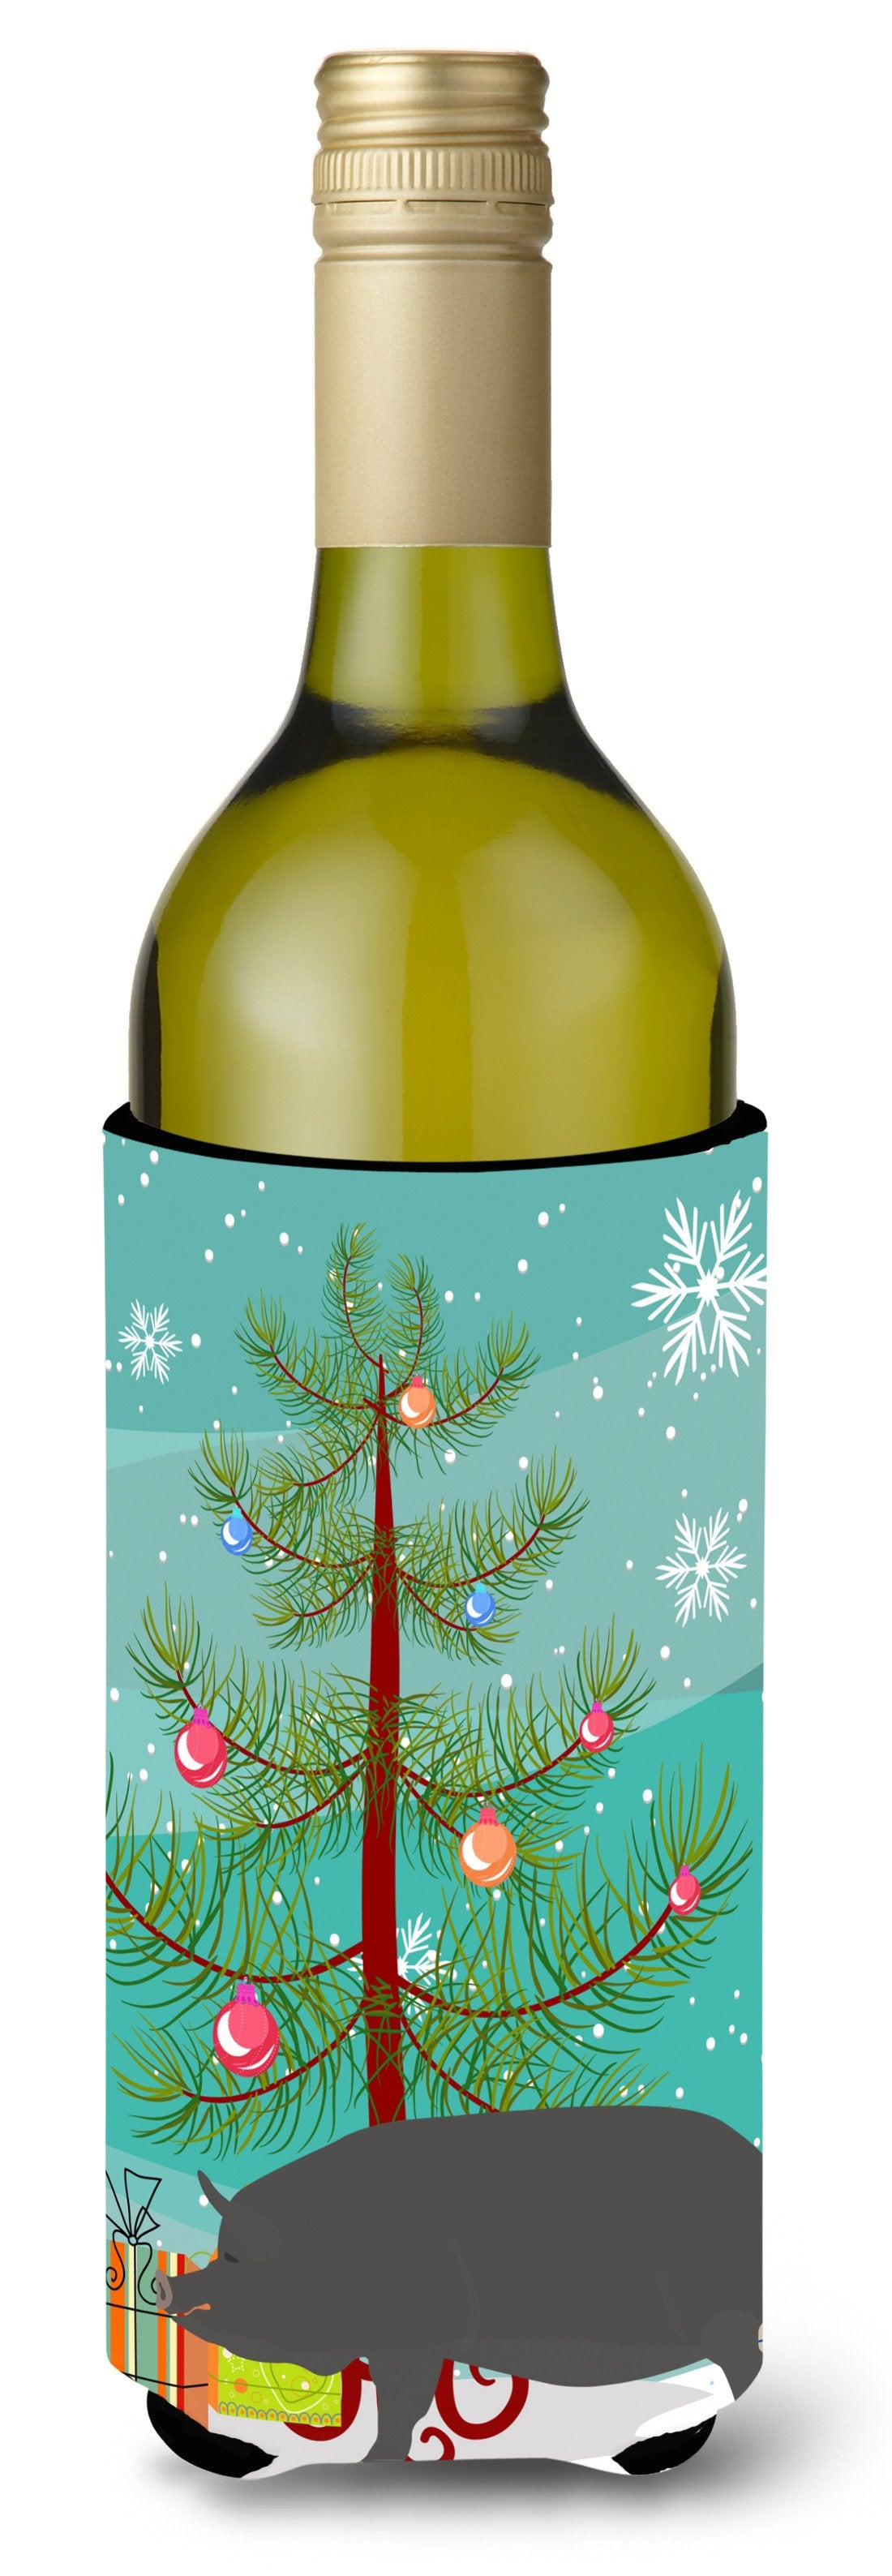 Berkshire Pig Christmas Wine Bottle Beverge Insulator Hugger BB9300LITERK by Caroline's Treasures